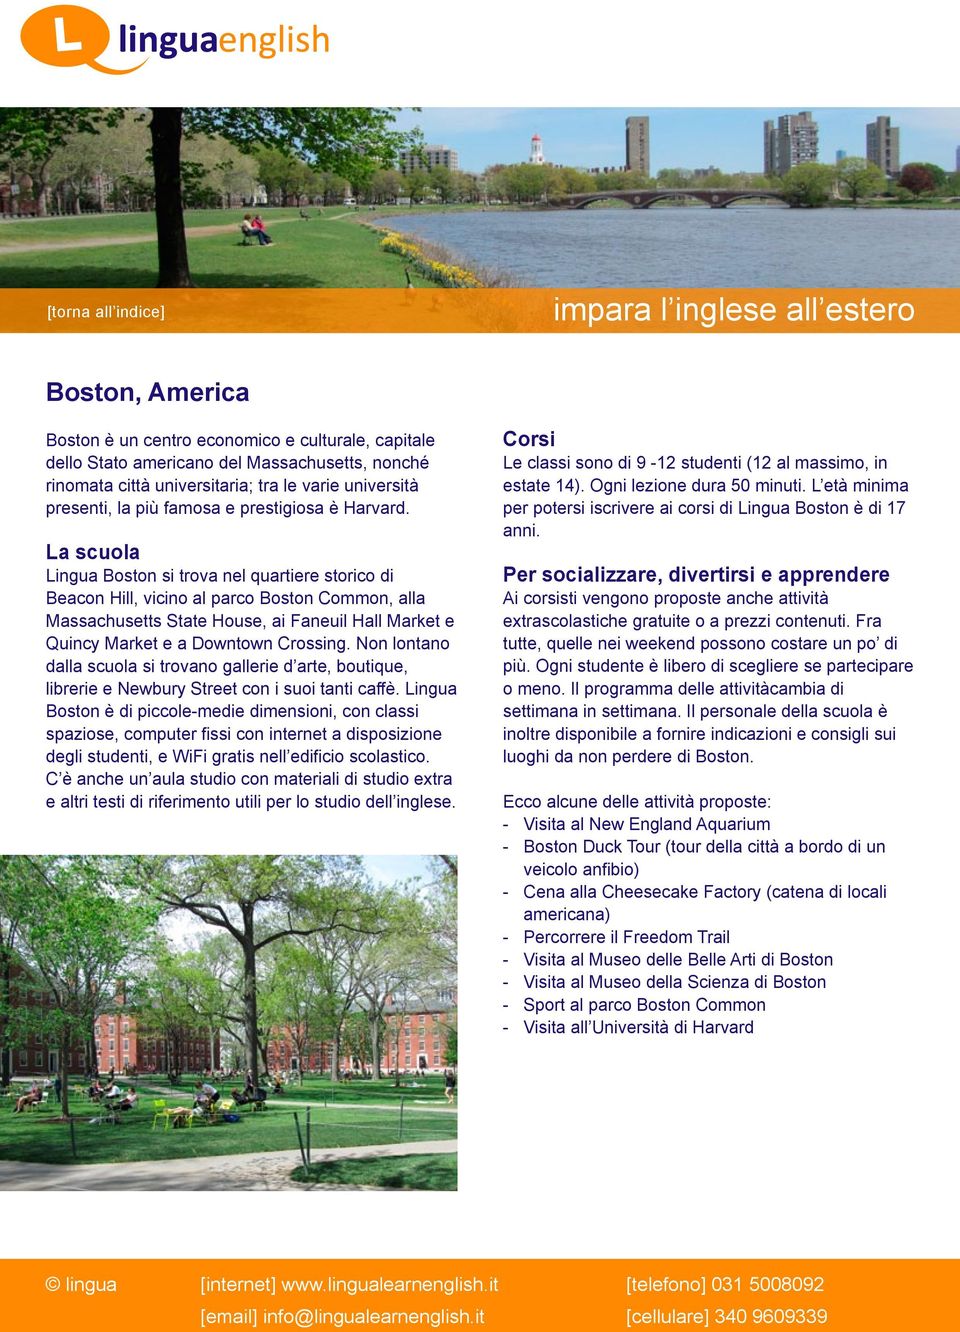 Lingua Boston si trova nel quartiere storico di Beacon Hill, vicino al parco Boston Common, alla Massachusetts State House, ai Faneuil Hall Market e Quincy Market e a Downtown Crossing.